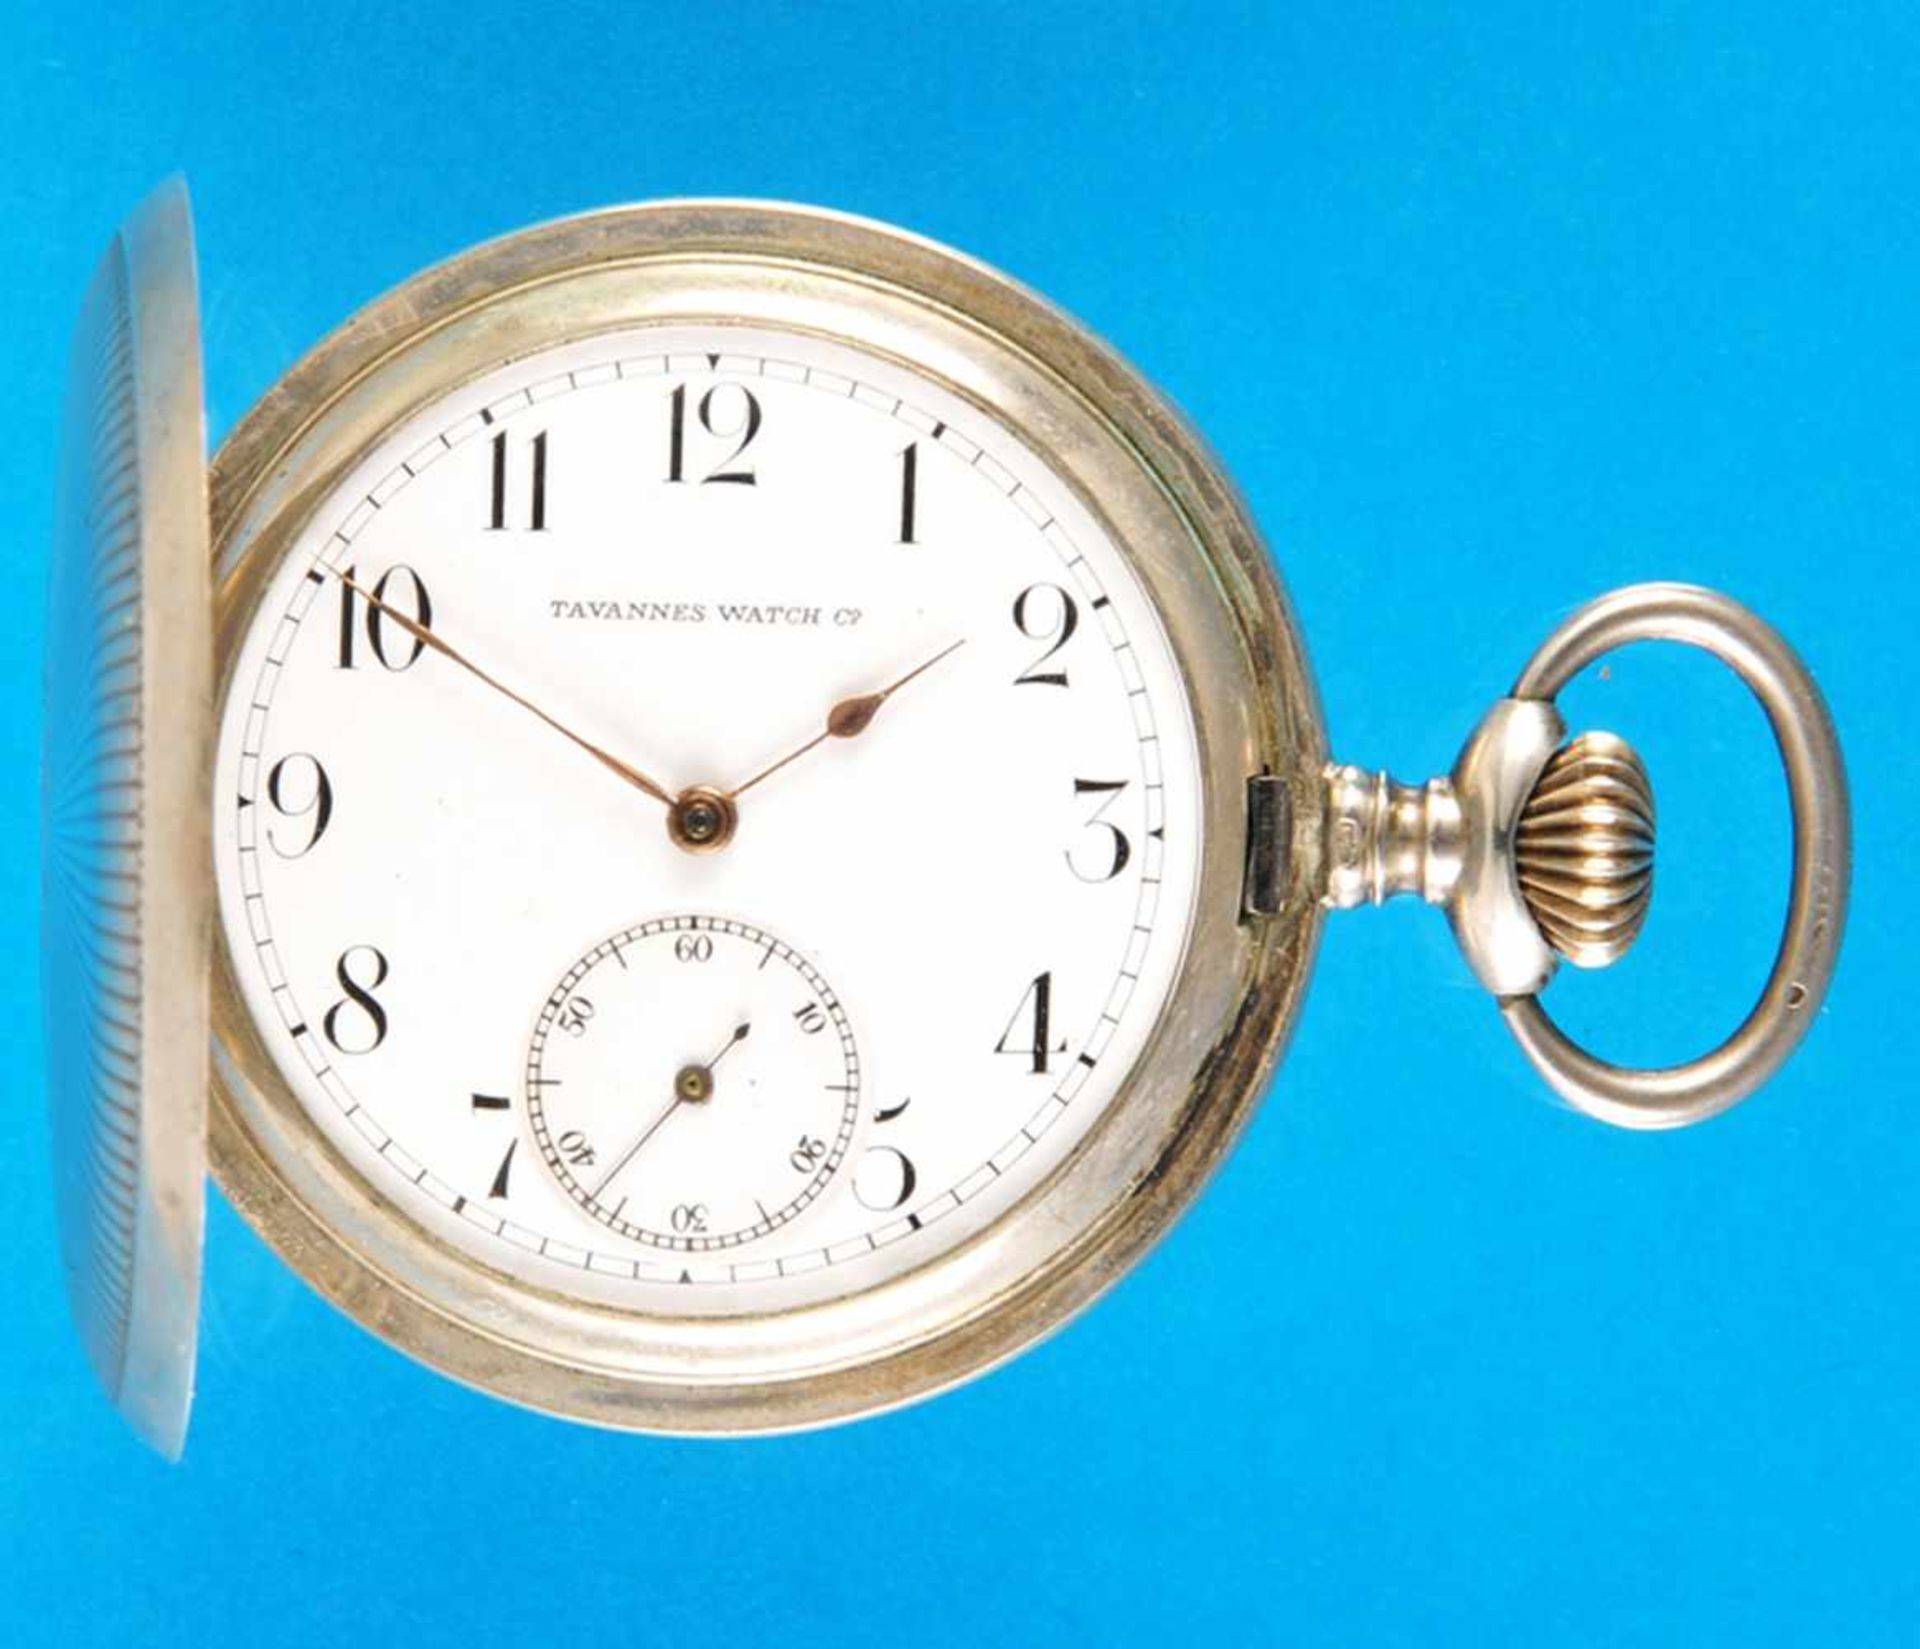 Silver pocket watch with hunting case, Tavannes Watch Co.Silbertaschenuhr mit Sprungdeckel, Tavannes